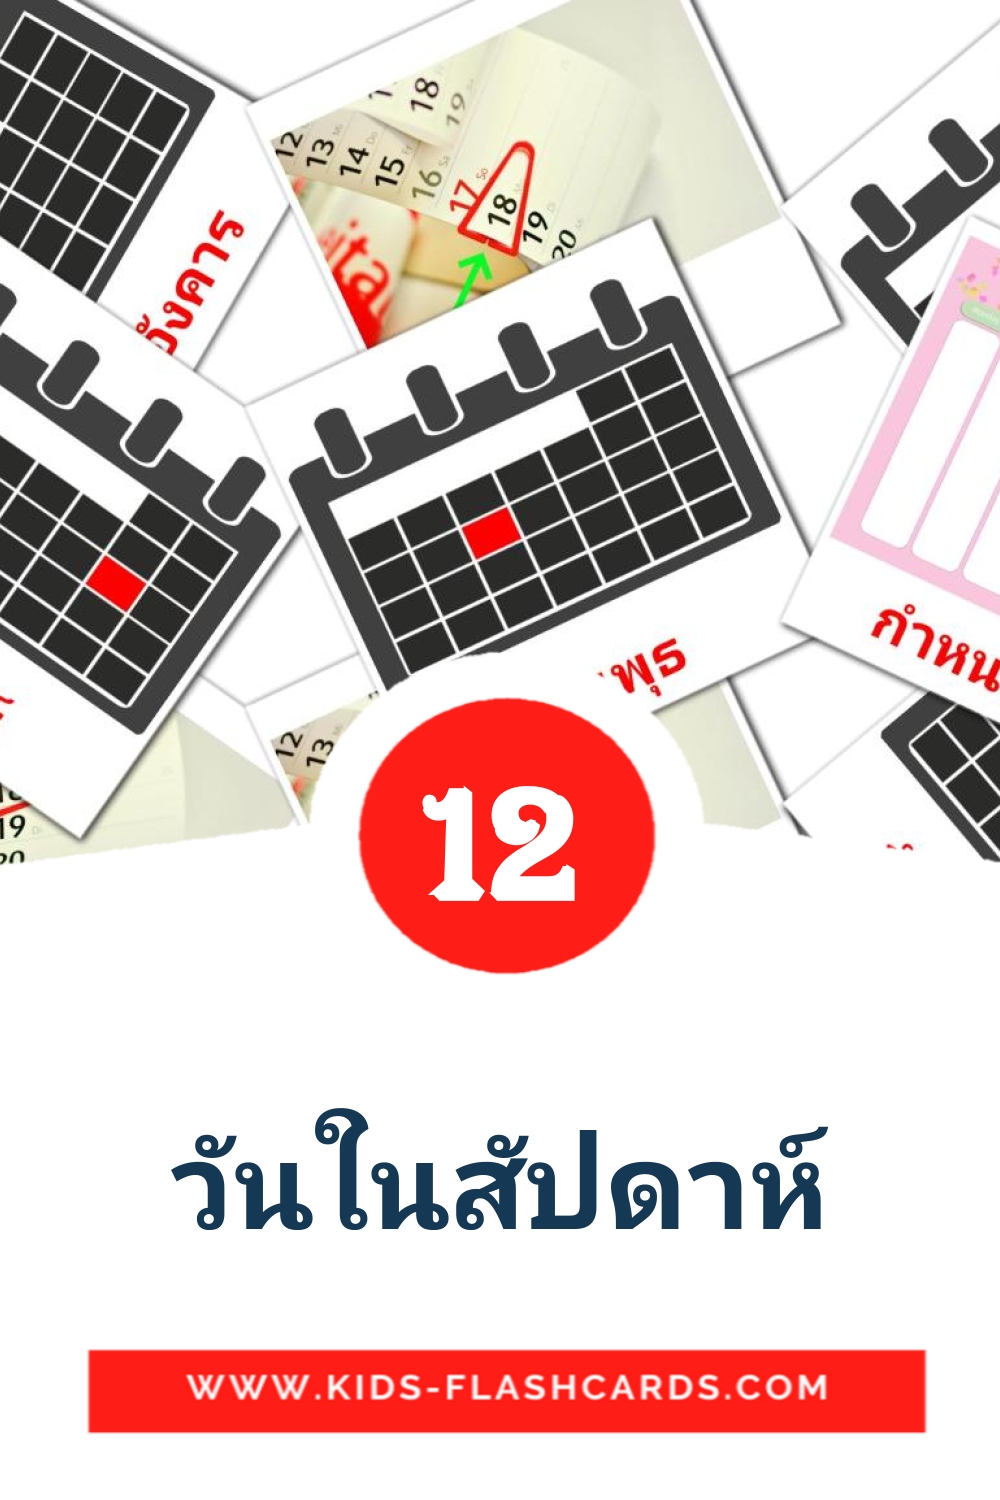 12 Cartões com Imagens de วันในสัปดาห์ para Jardim de Infância em thai